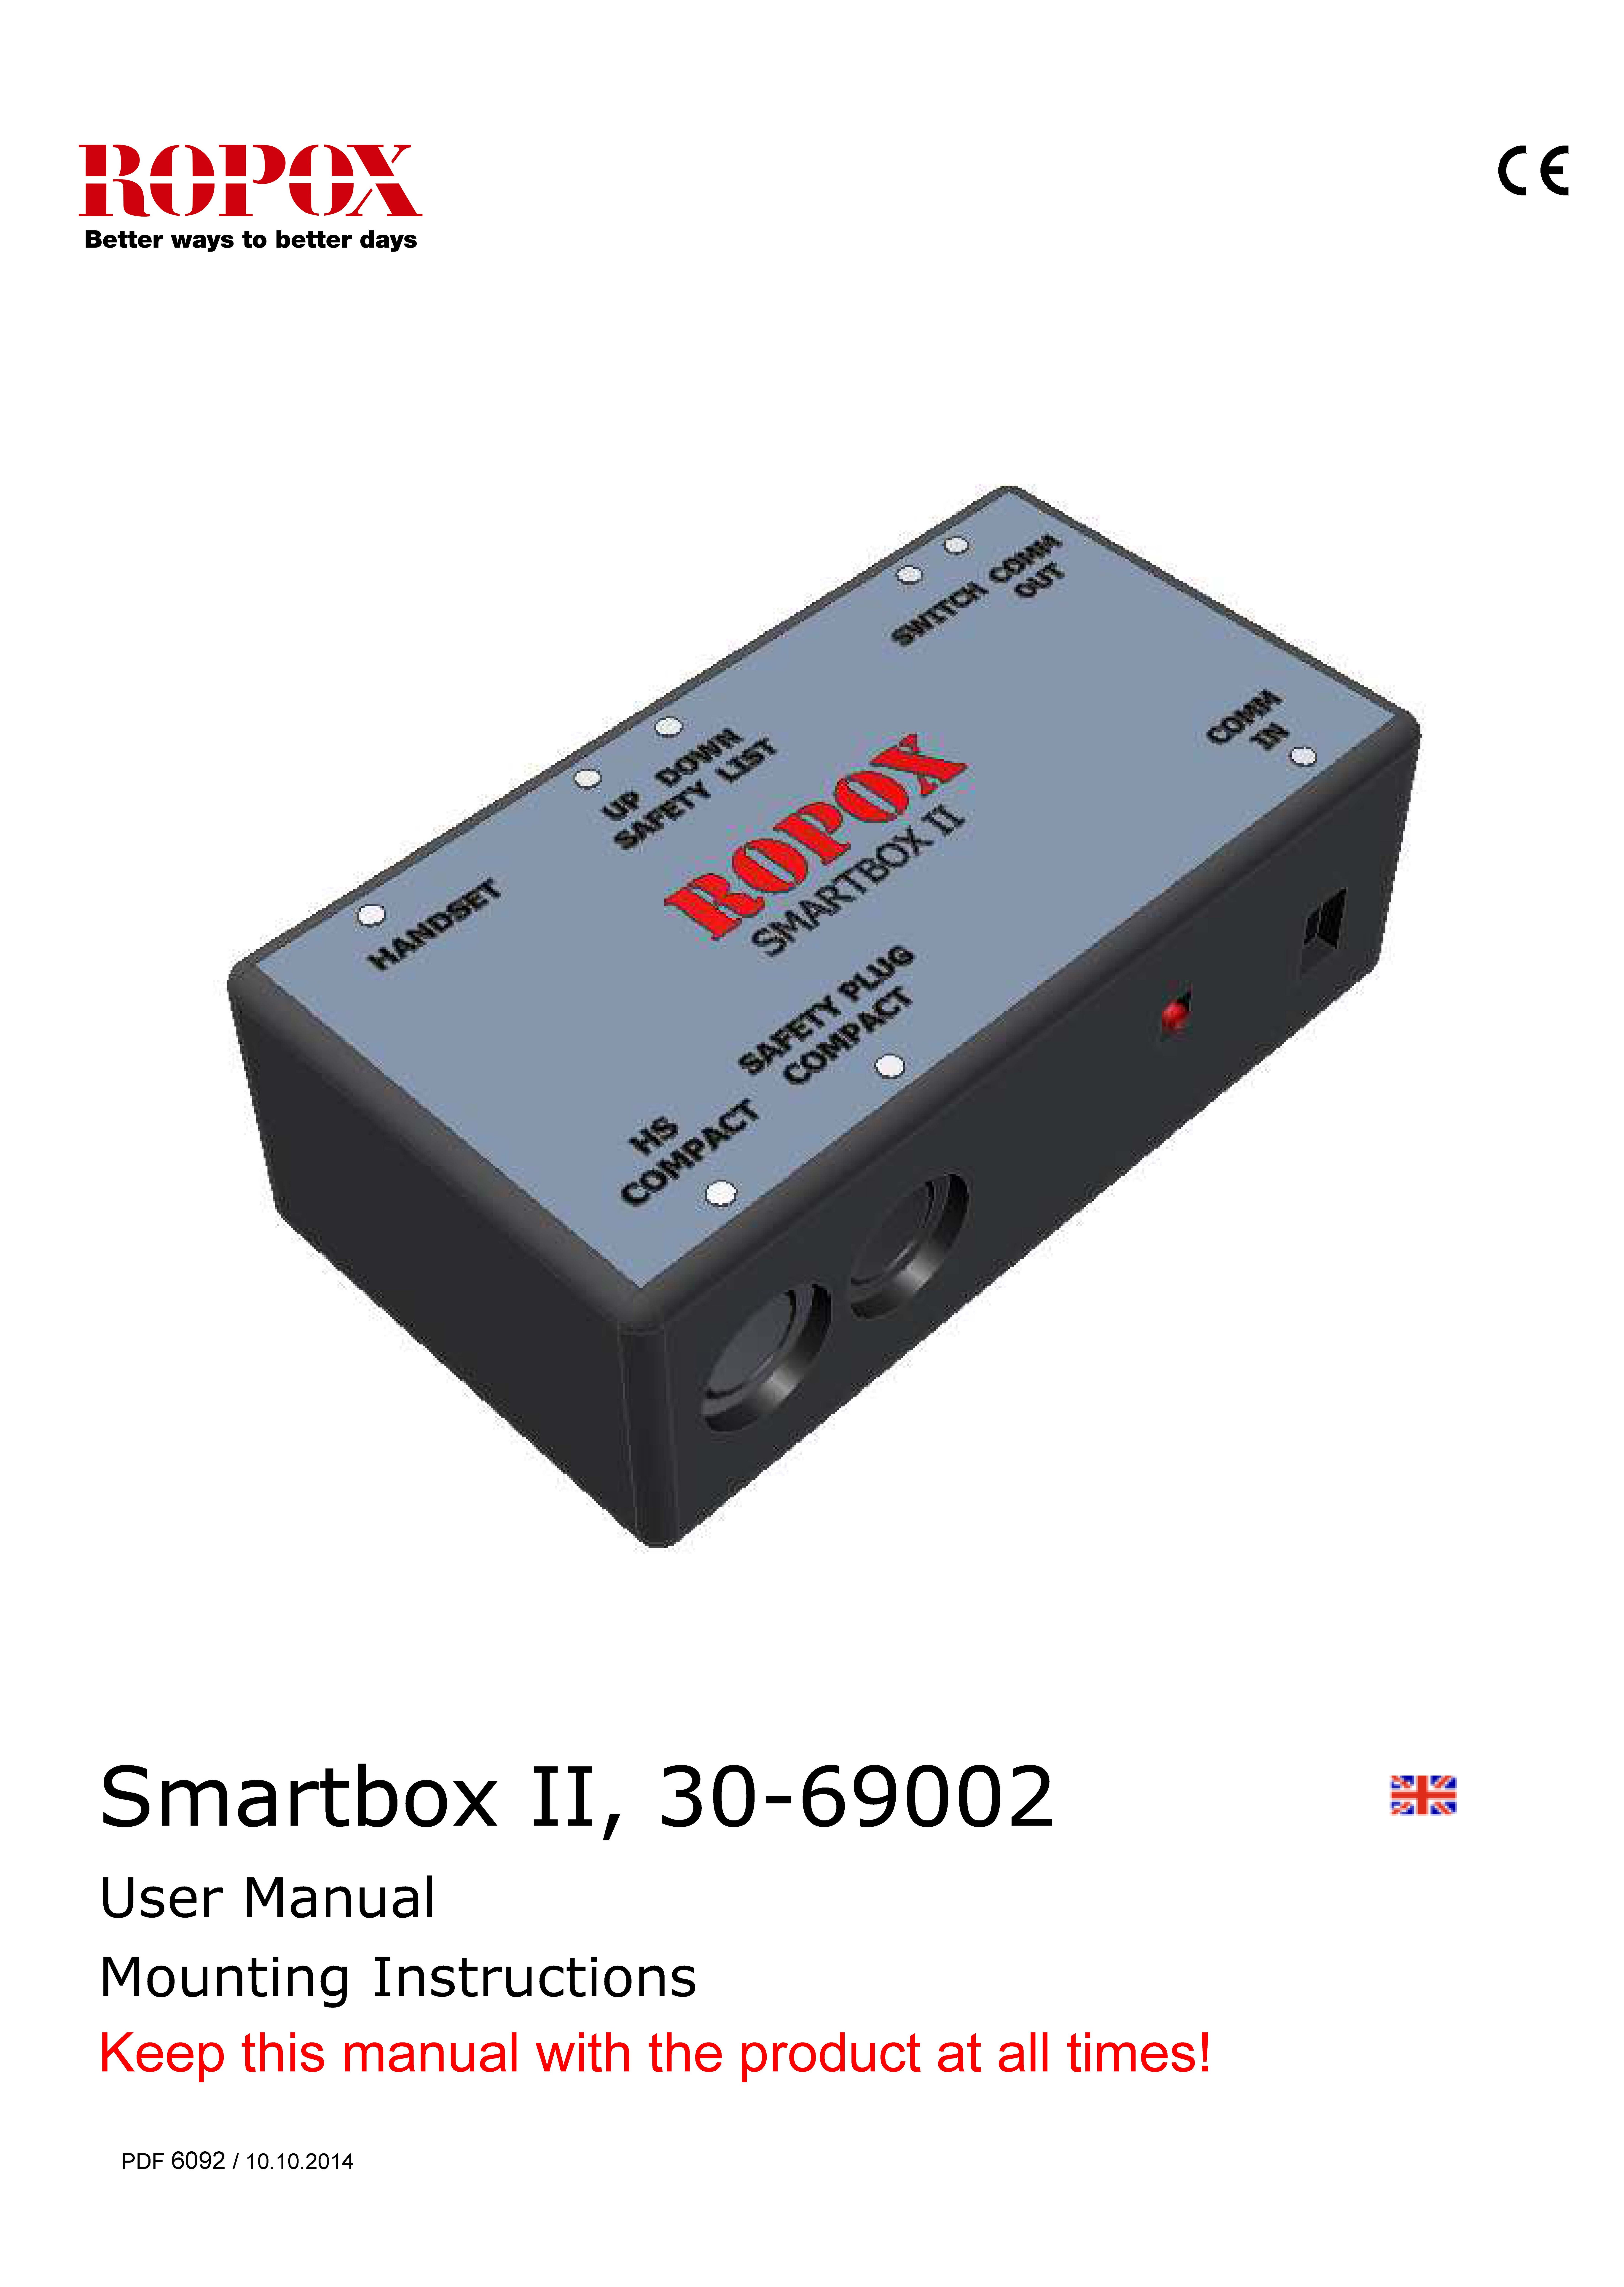 Ropox user & mounting manual - Smartbox II